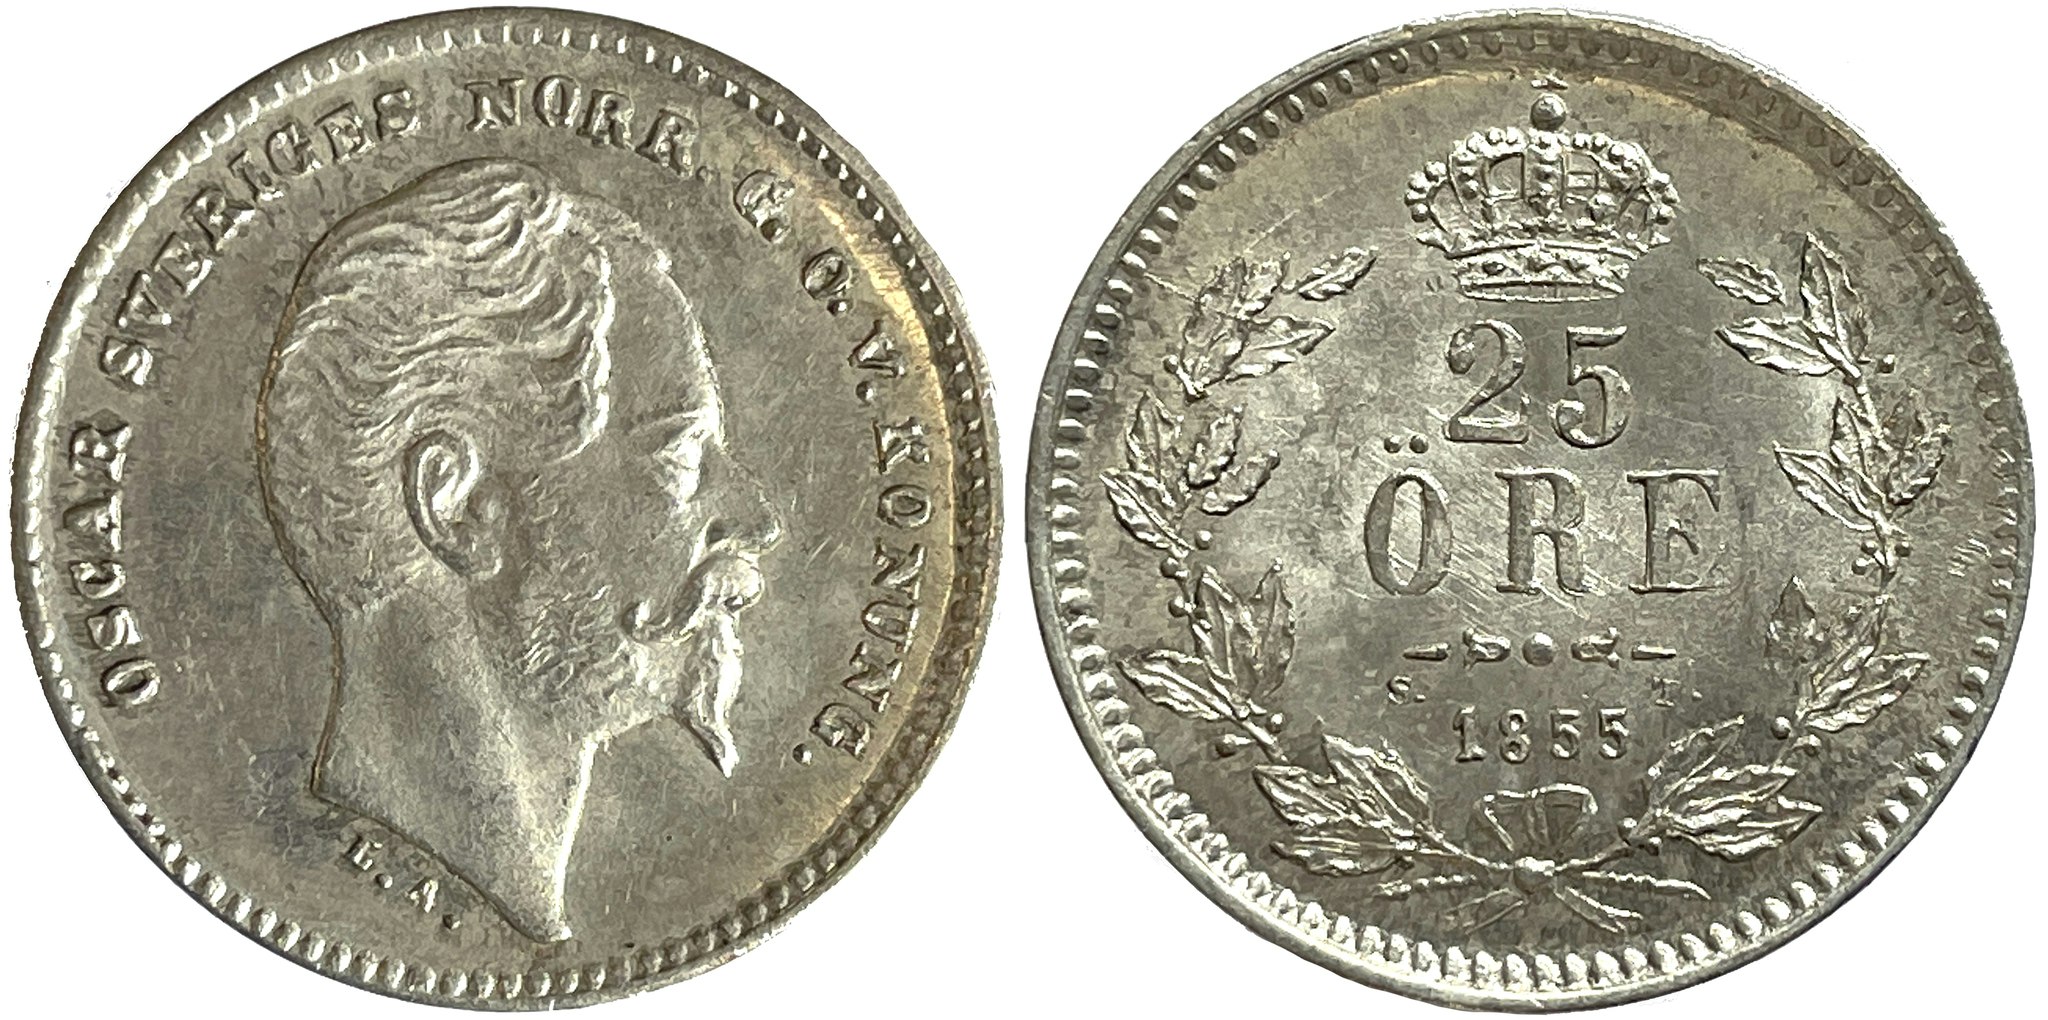 Oskar I - 25 Öre 1855 - Ett läckert ocirkulerat och underskattat mynt